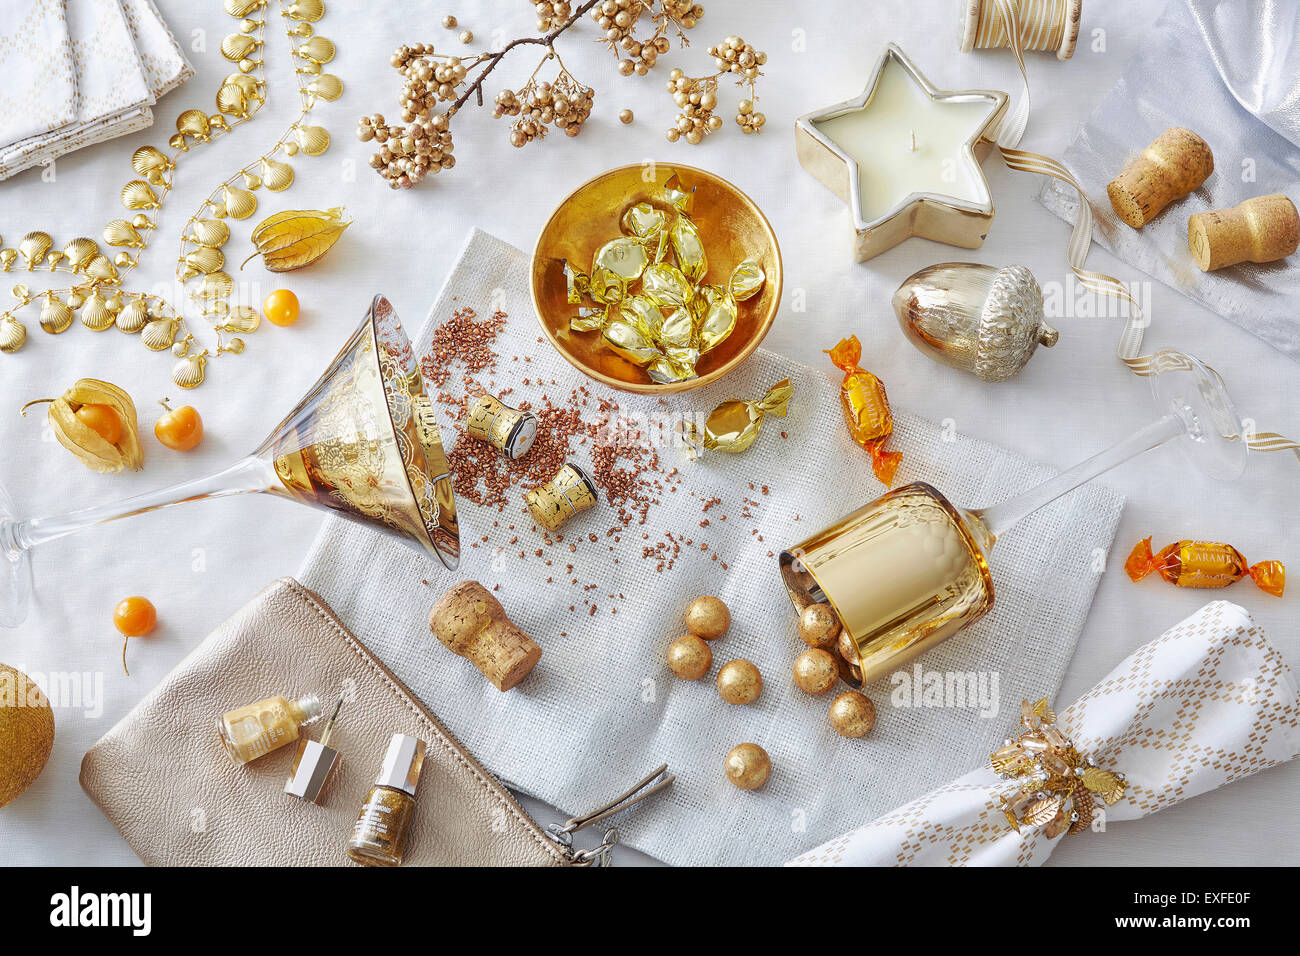 Weiß und Gold gefärbt Stillleben mit Süßwaren und unterschiedlichsten Objekten Stockfoto